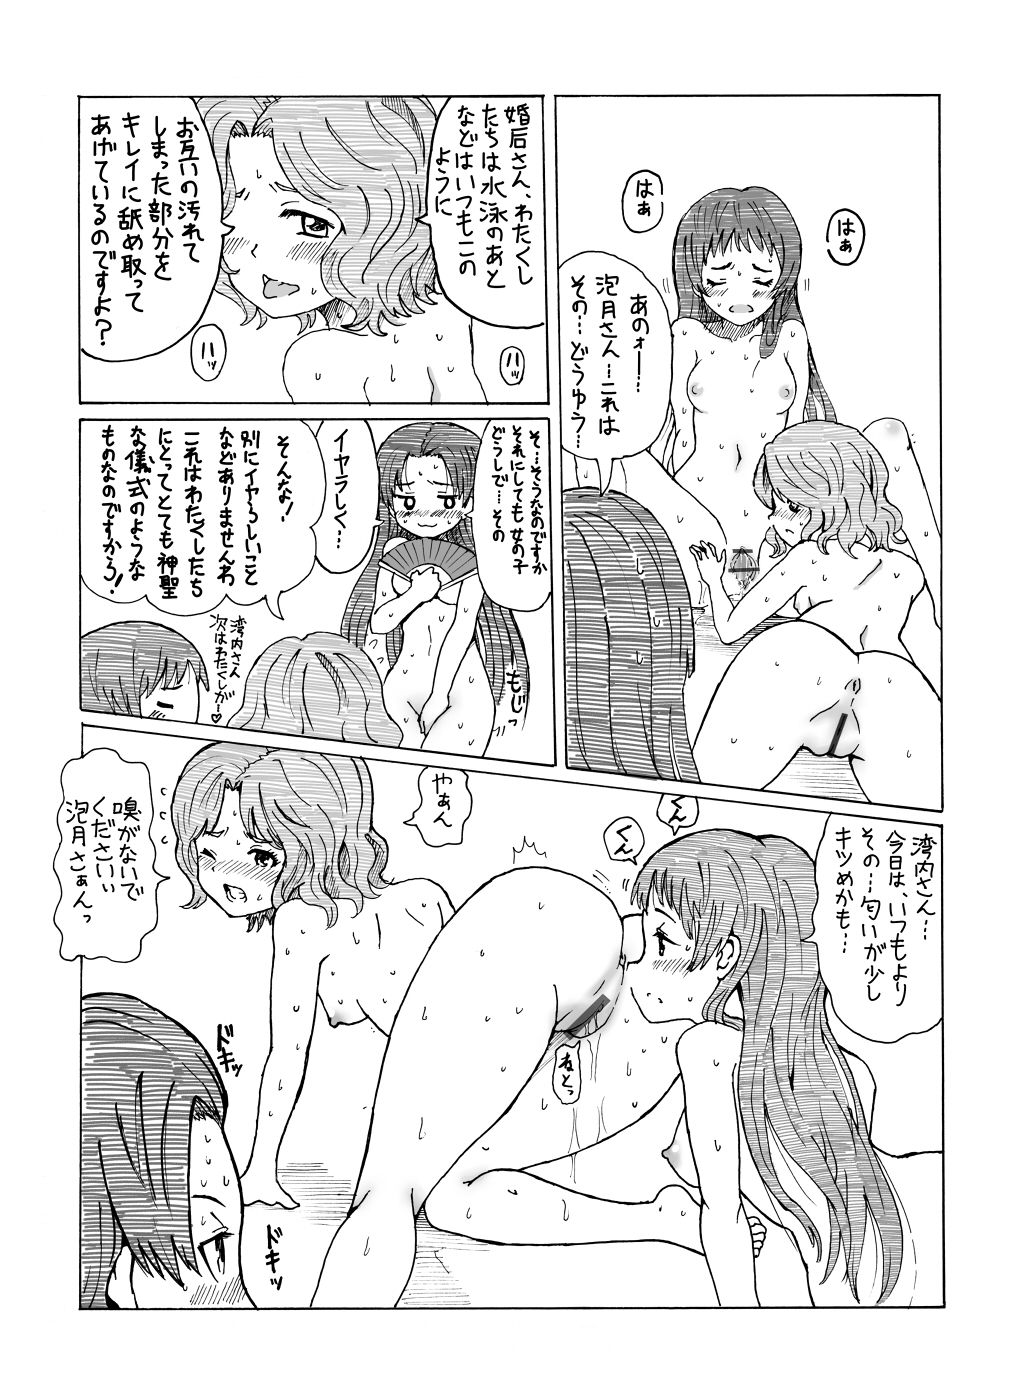 保cha Bay silk froth flotation of Akira-CHAN, I (rail gun) of JC Princess cute erotic pictures 28